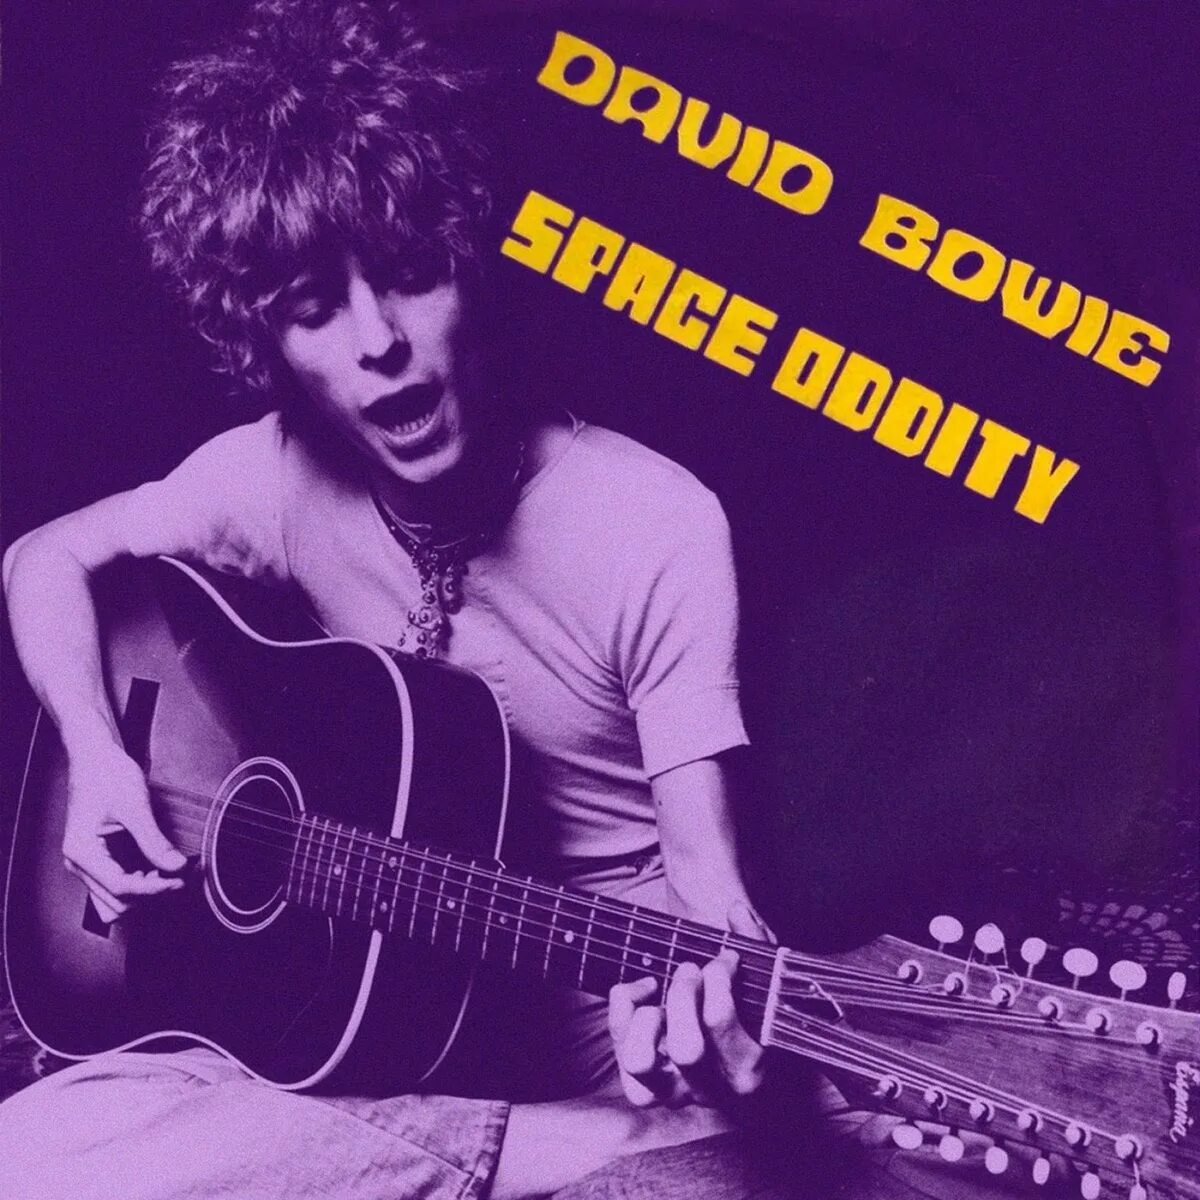 David Bowie Space Oddity 1969. David Bowie 1969 album. Боуи Space Oddity. David Bowie Space Oddity Single 1969. David bowie's space oddity